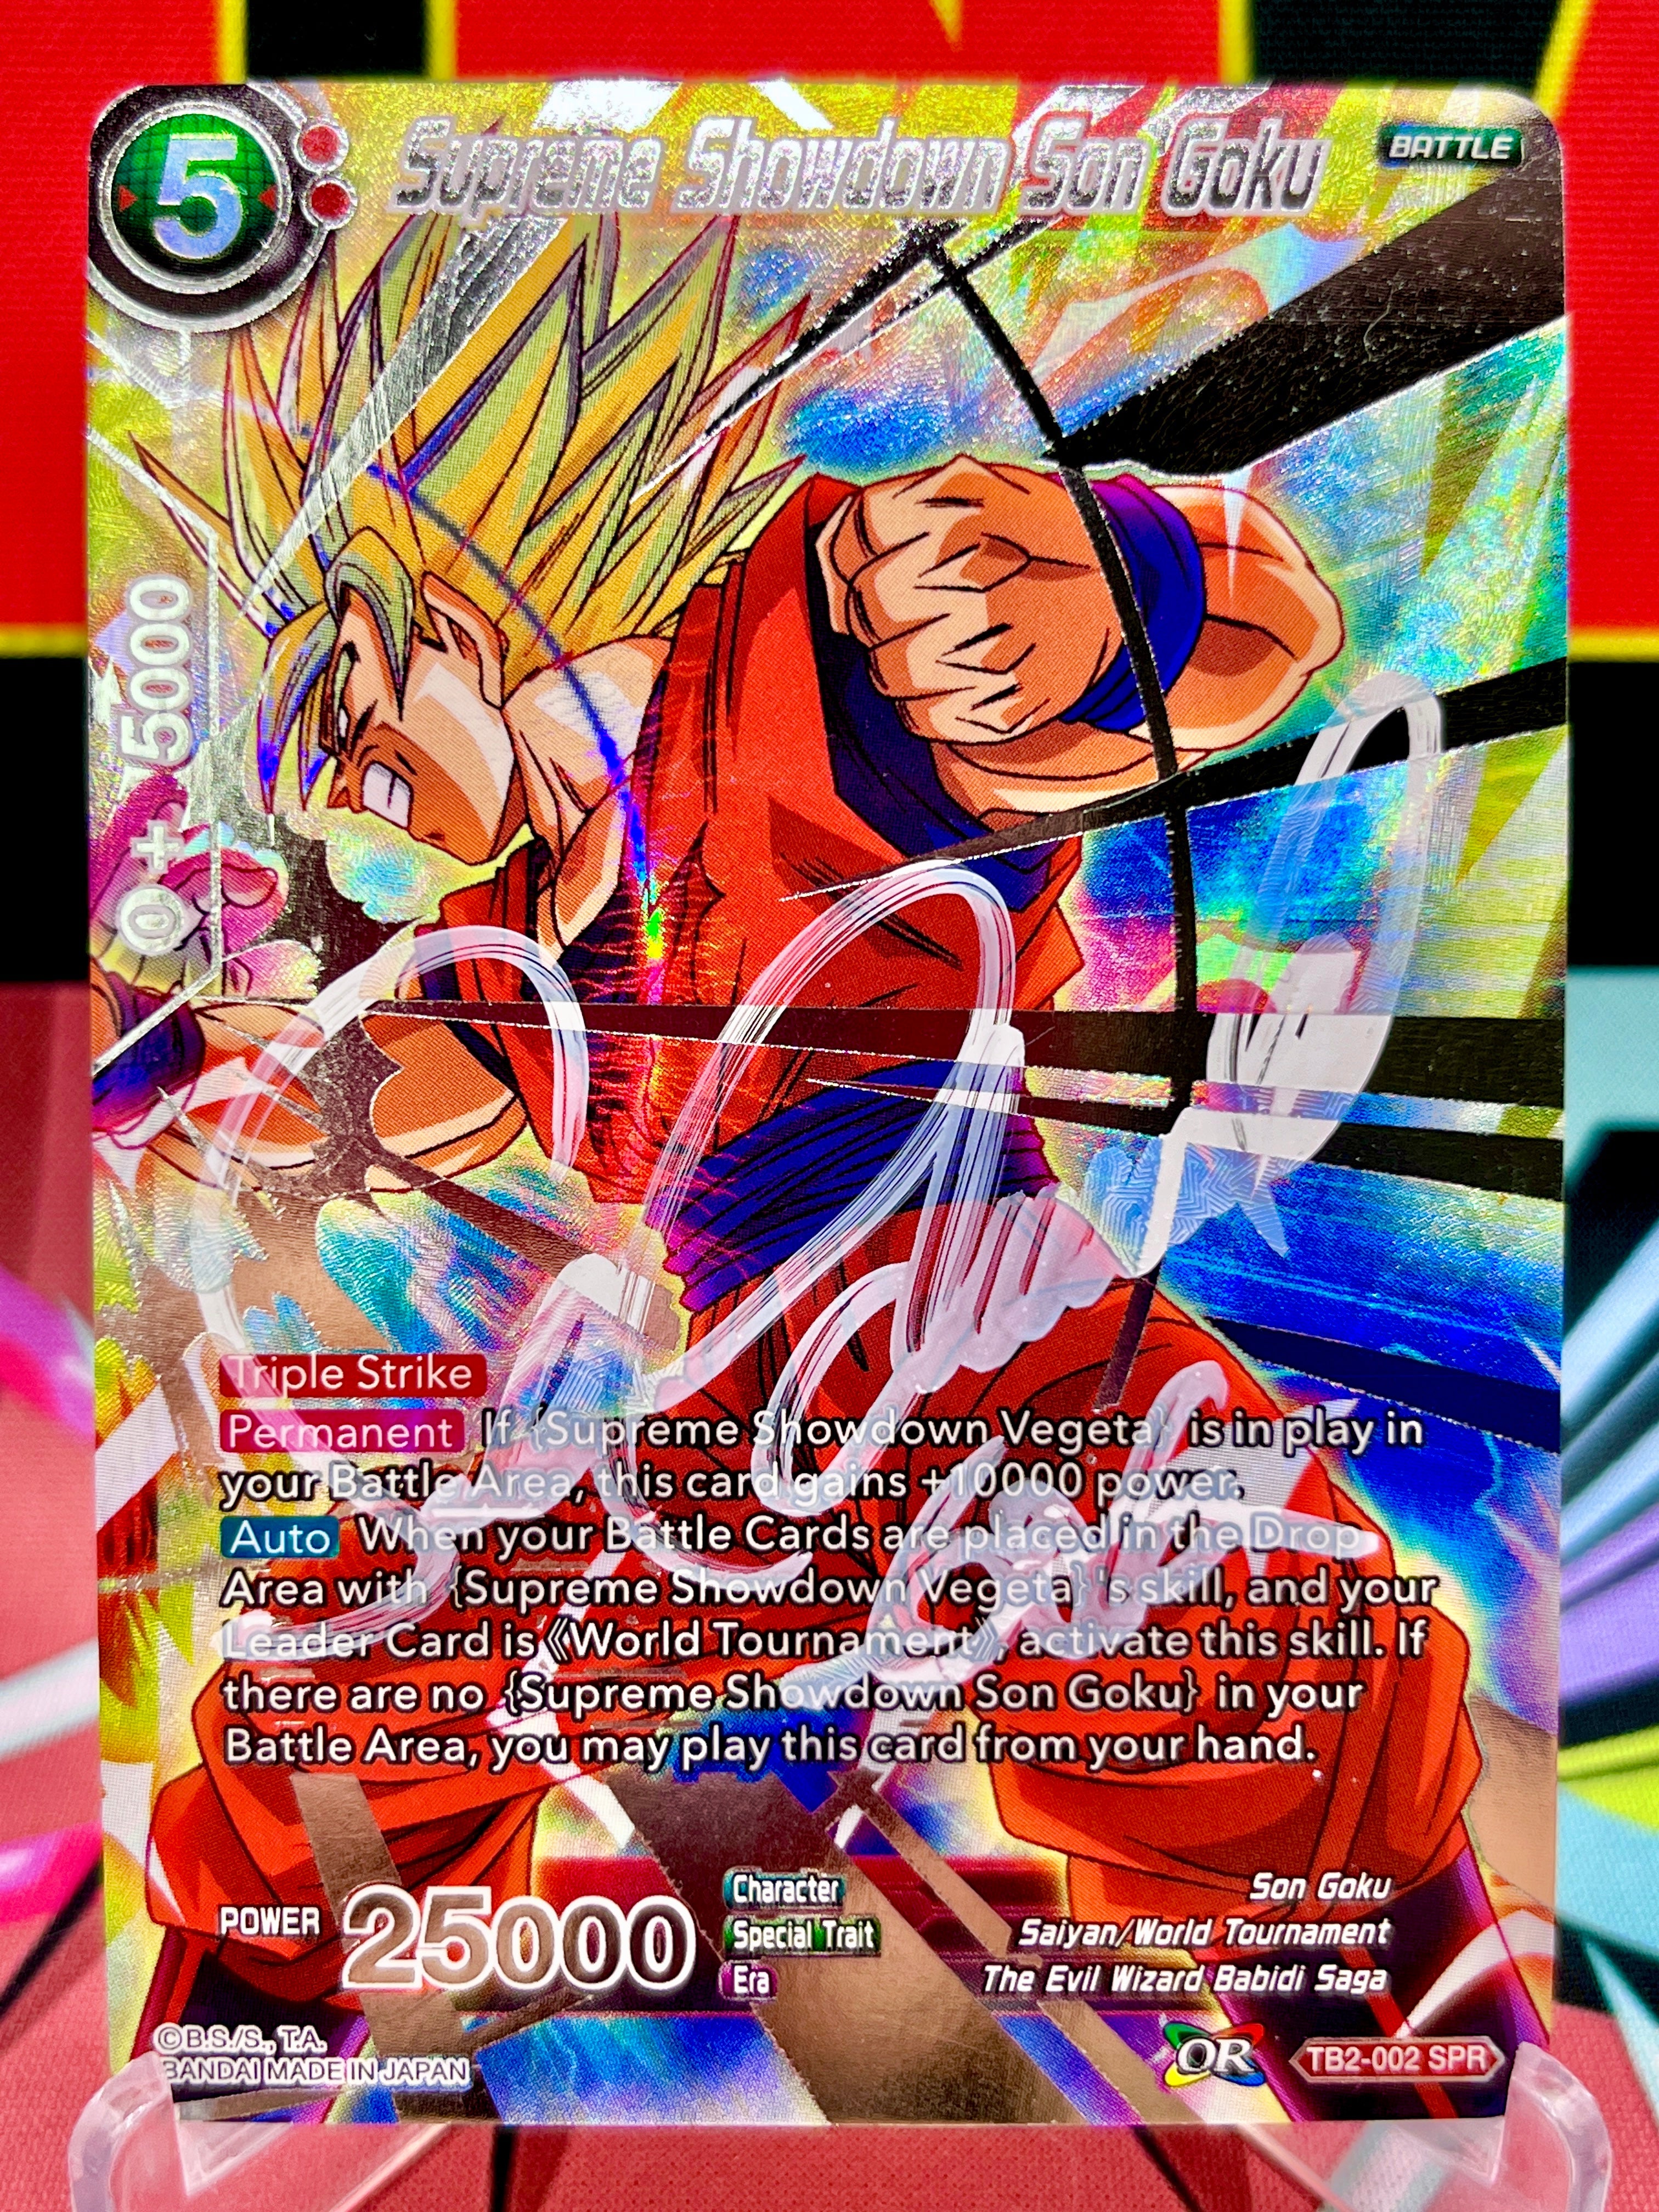 TB2-002 Supreme Showdown Son Goku SPR (2018) Autographed by Sean Schemmel